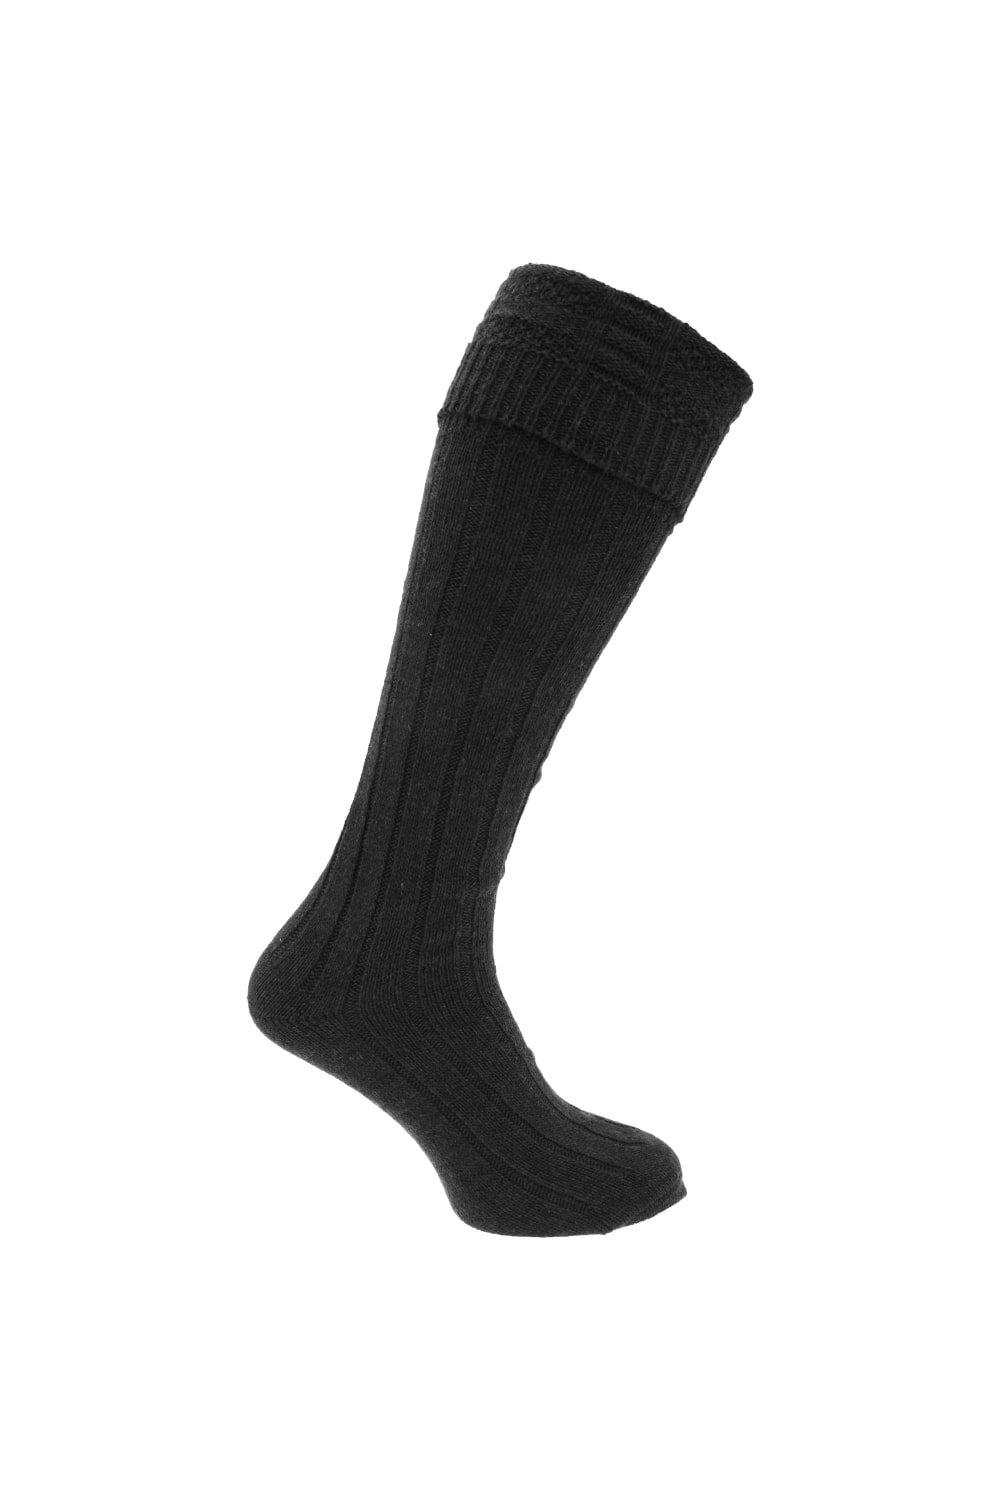 Scottish Highland Wear Wool Kilt Hose Socks (1 Pair)